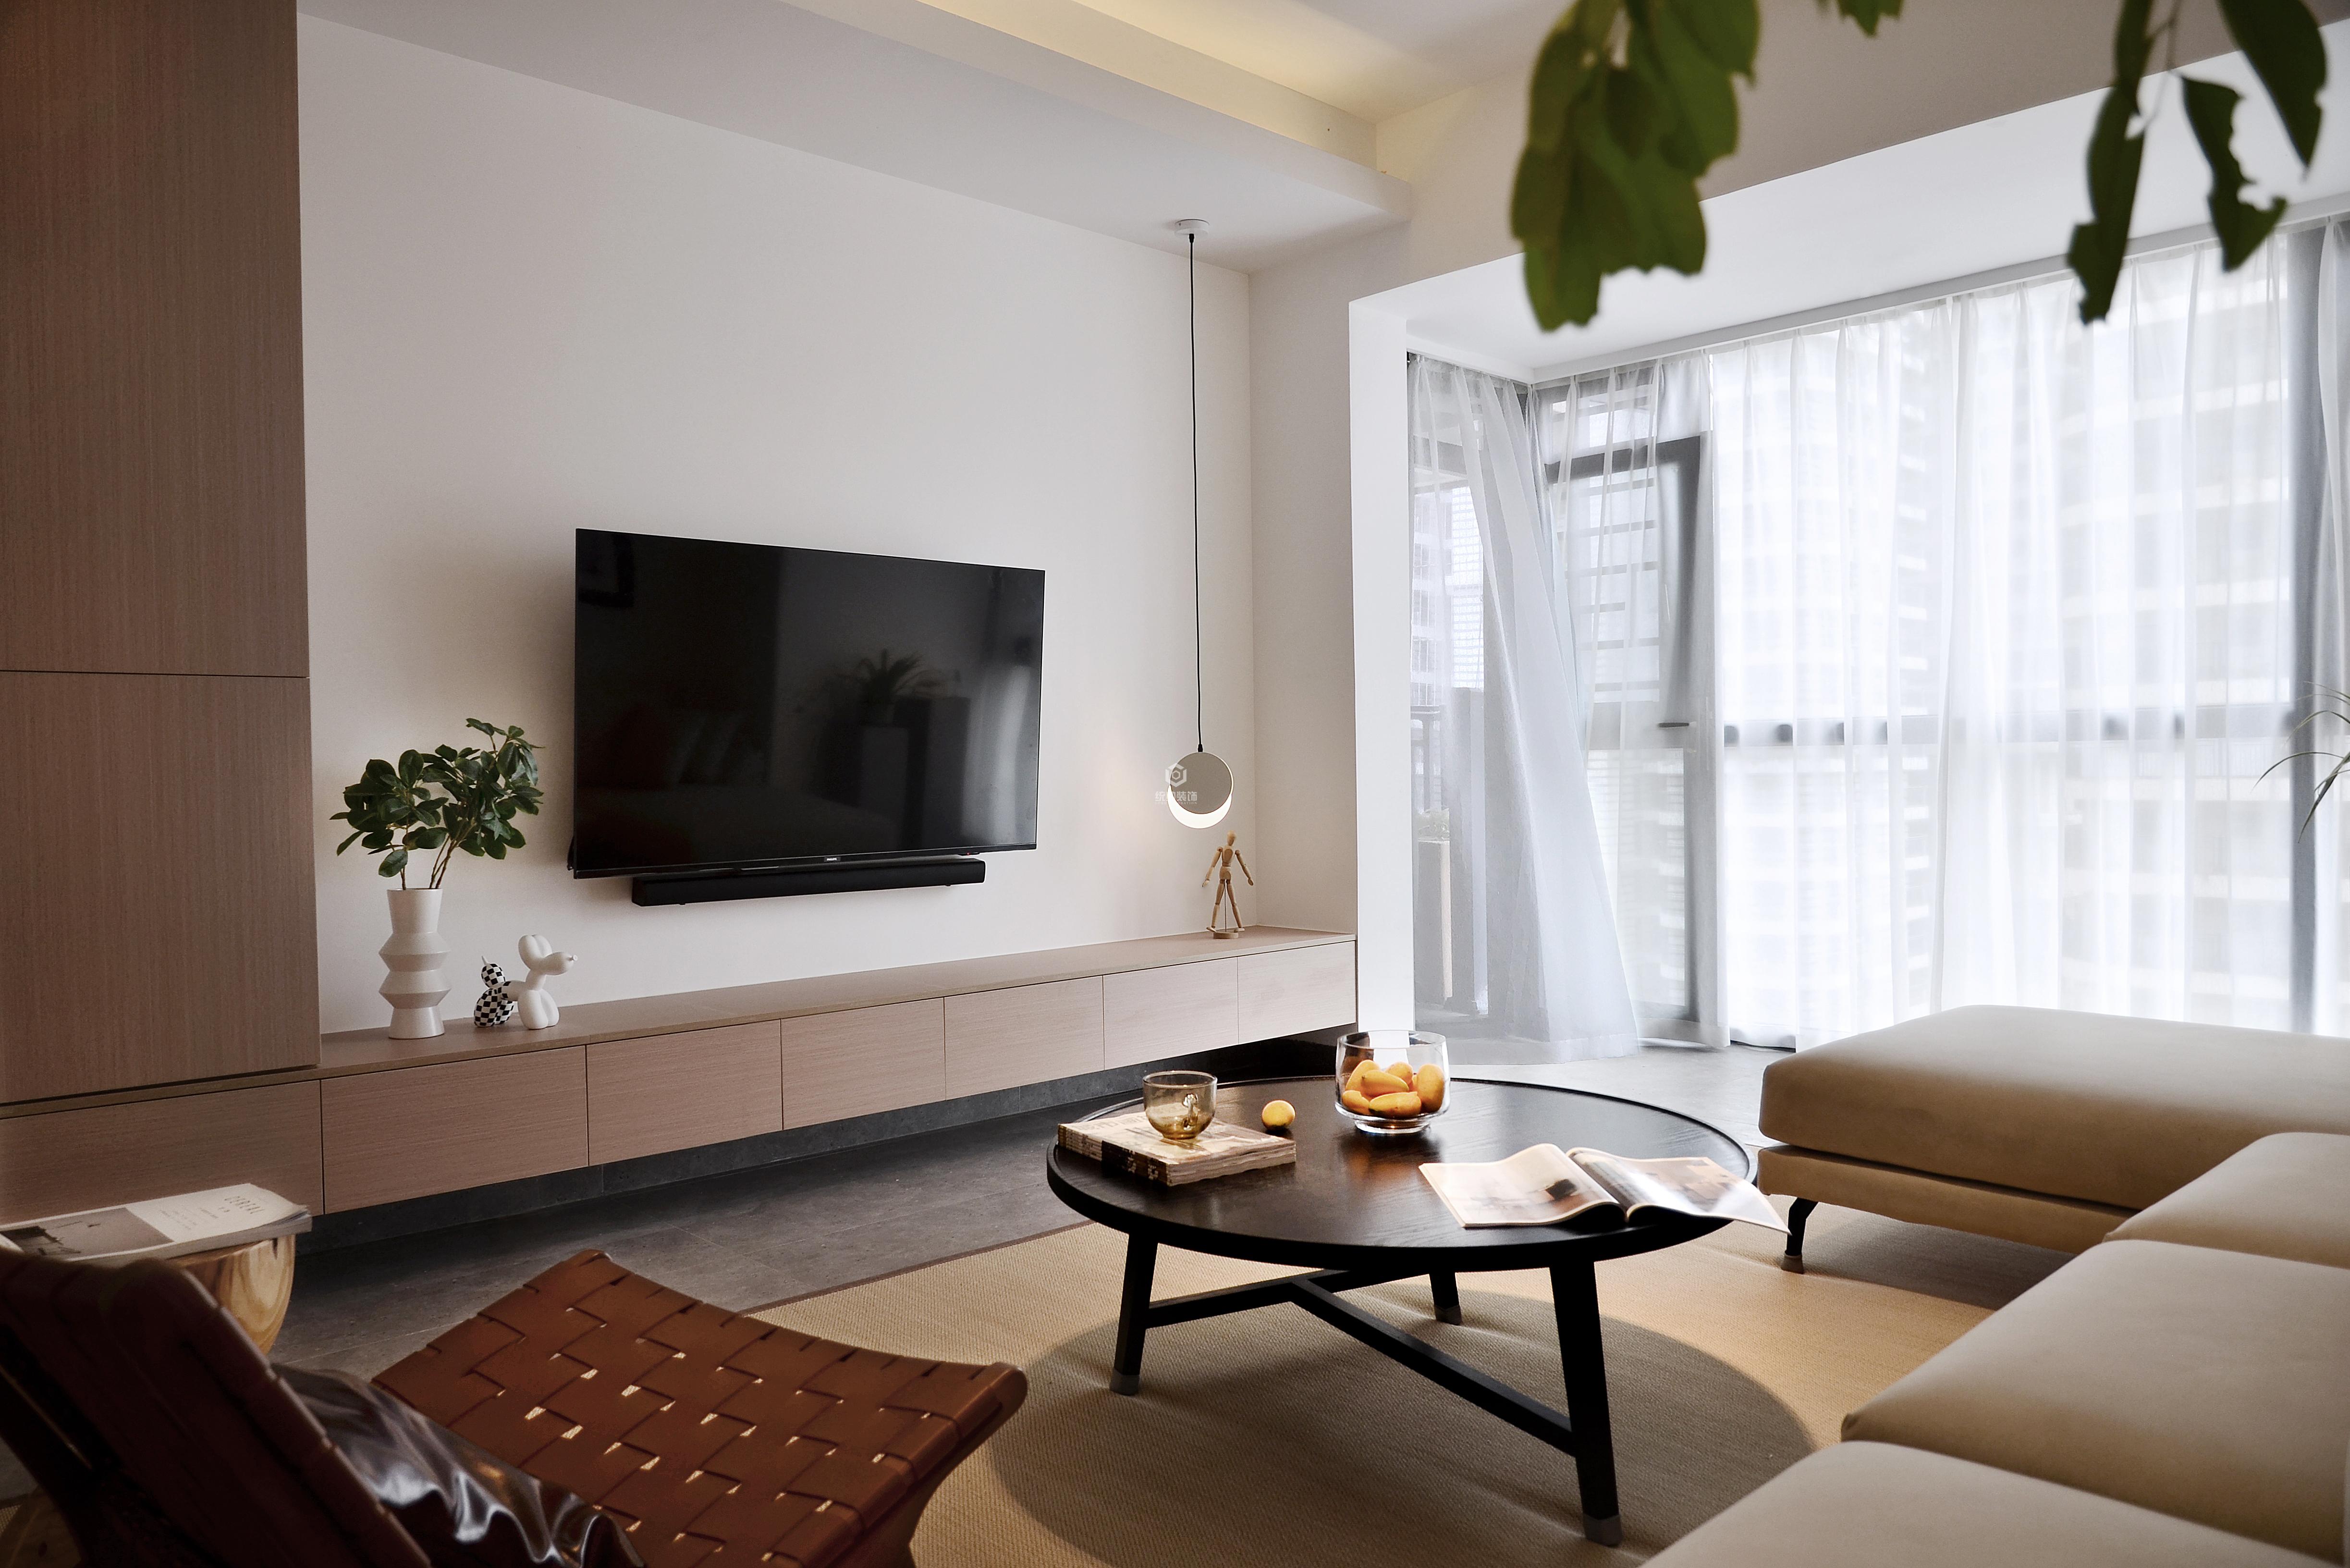 浦东新区经纬城市110平方现代简约风格3室2厅客厅装修效果图